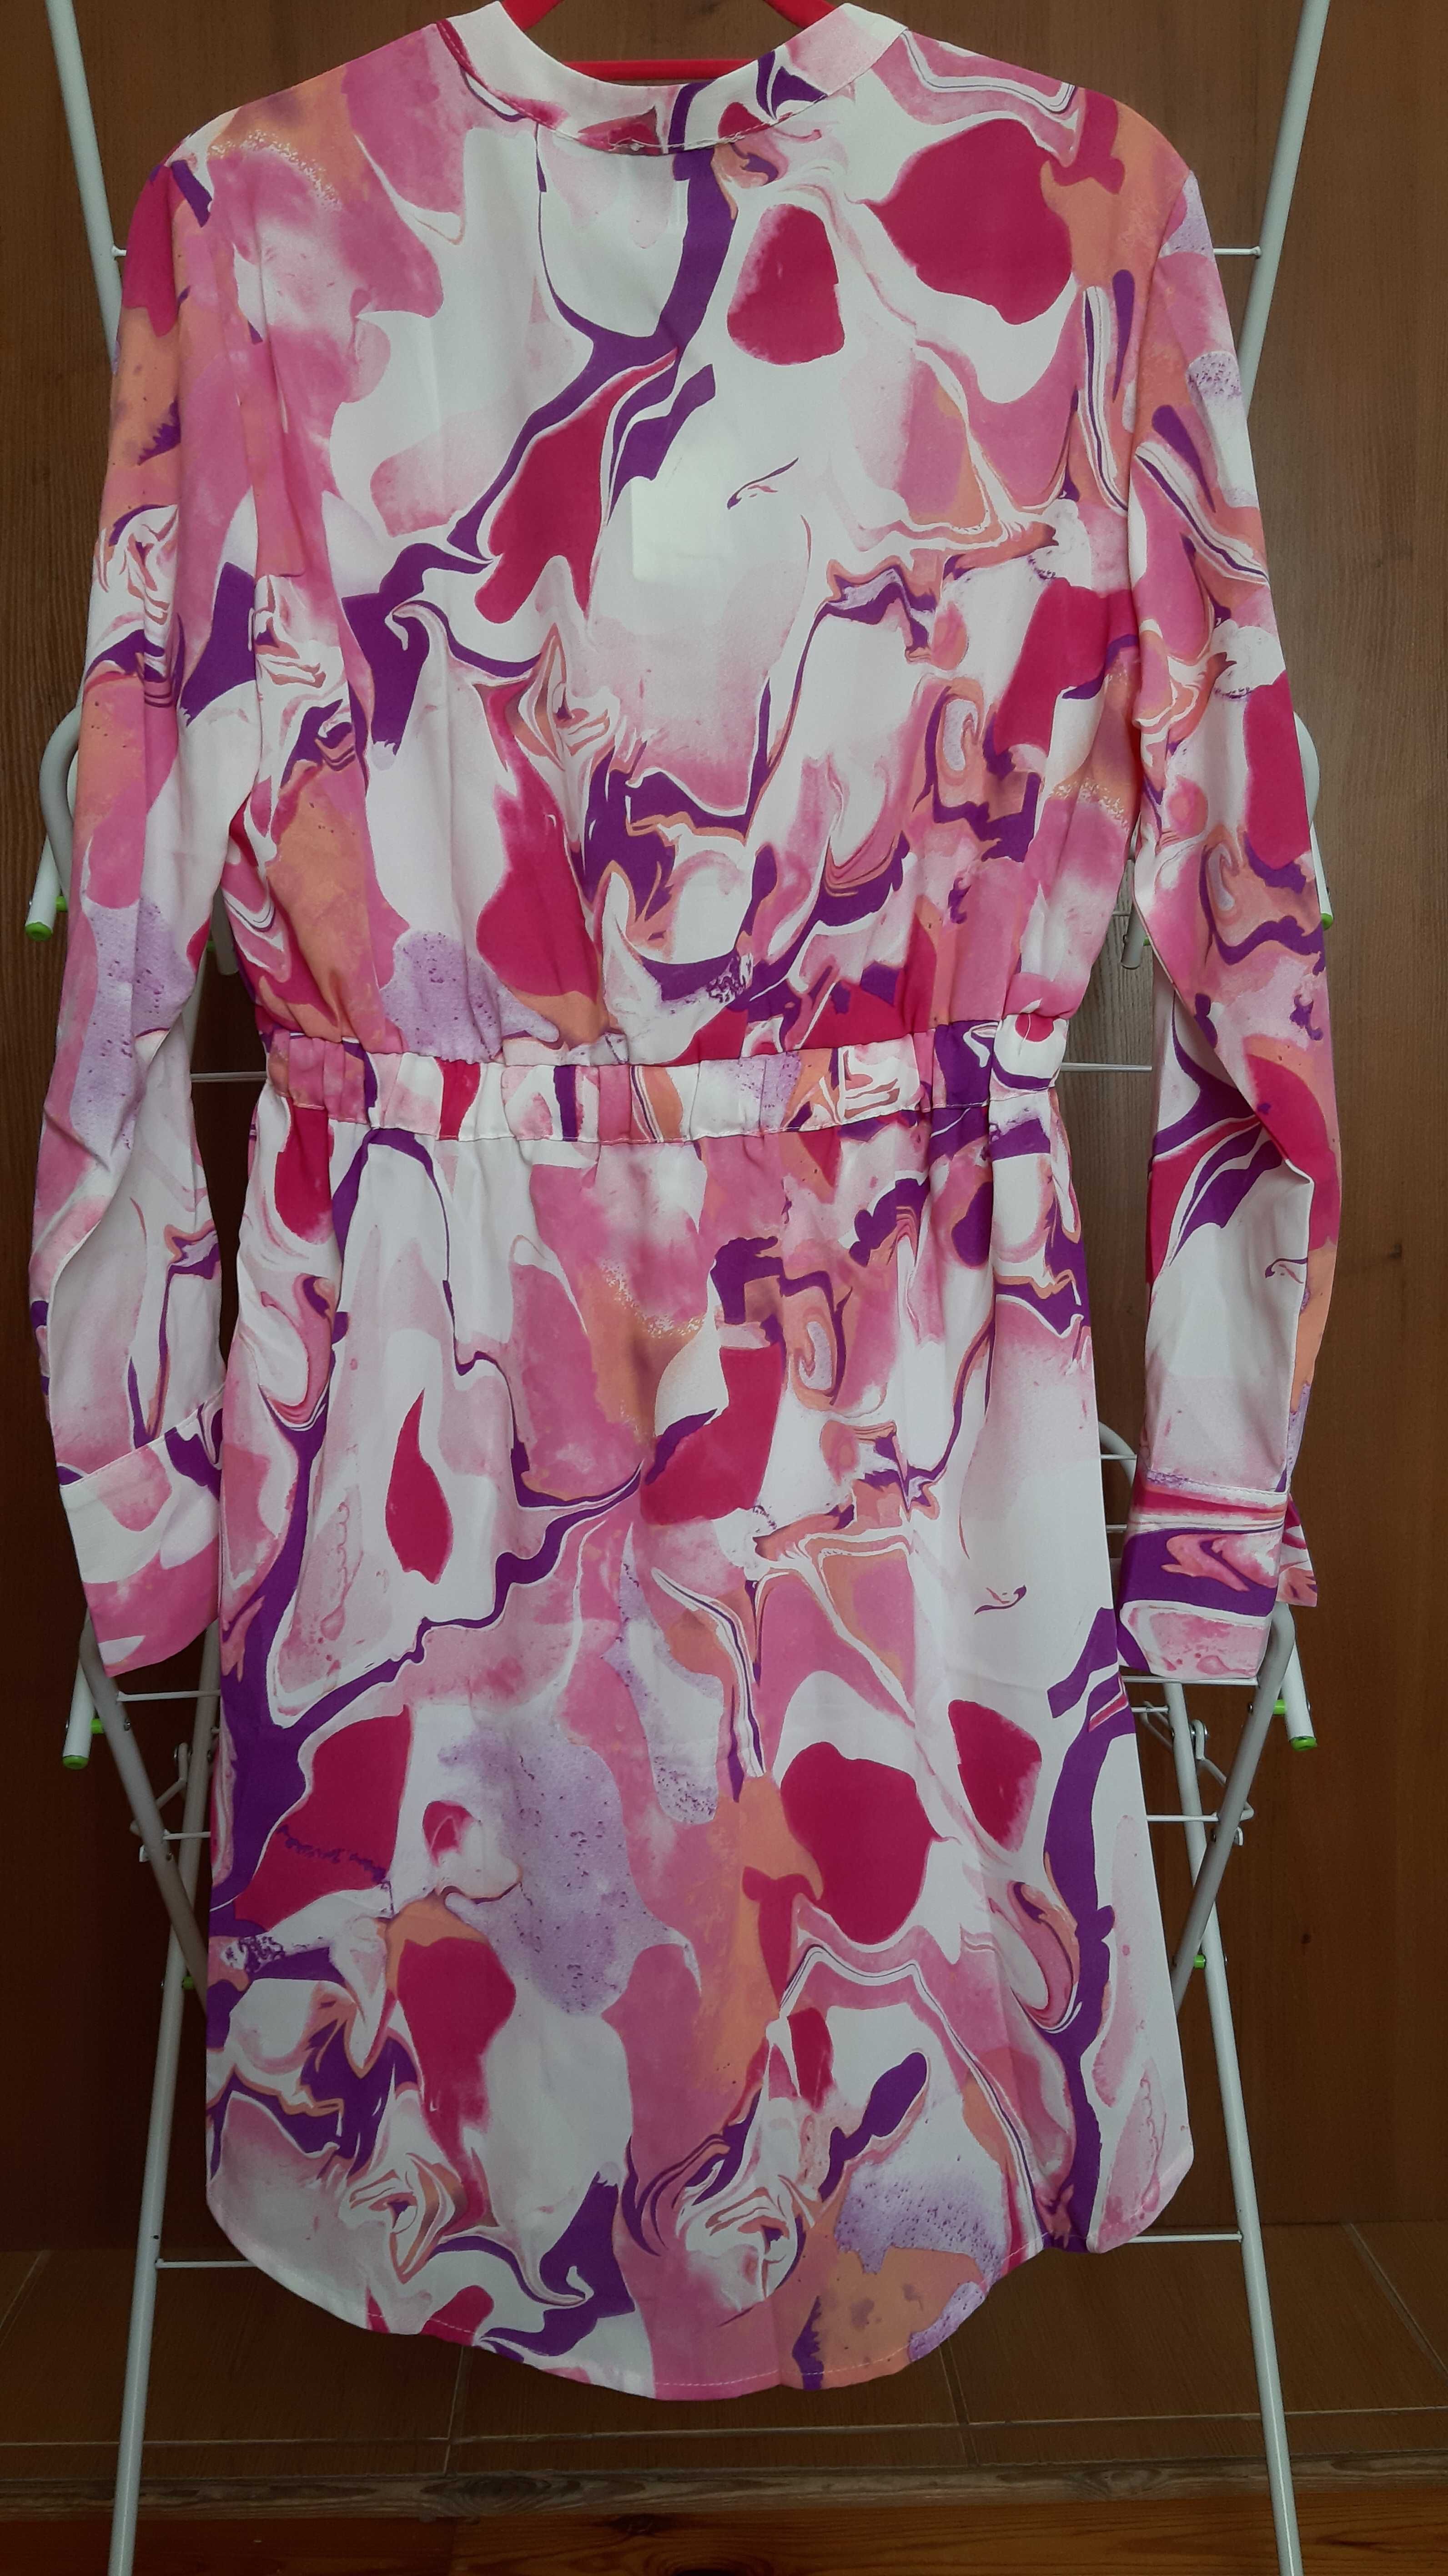 Kolorowa sukienka różowo-fioletowa szmizjerka, L, nowa